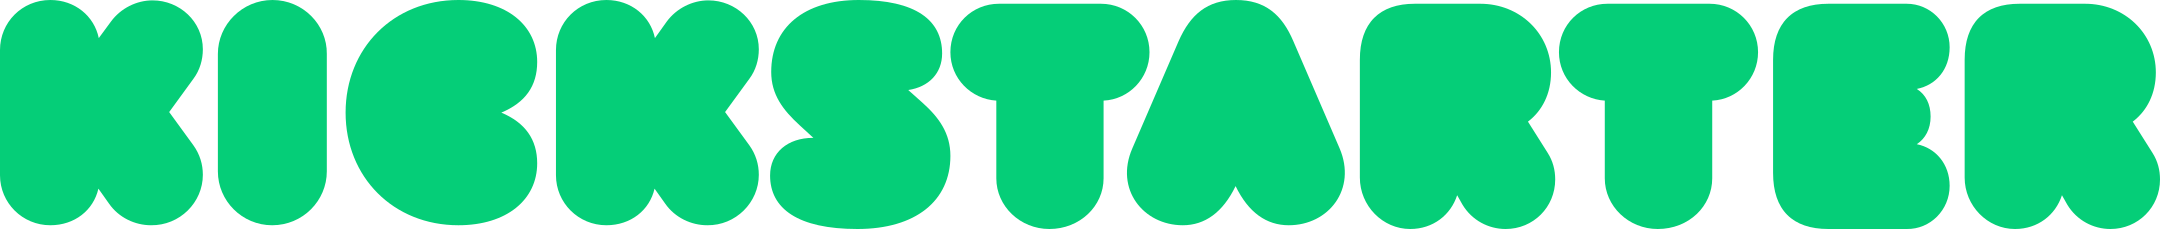 kickstarter logo 1 - Kickstarter Logo